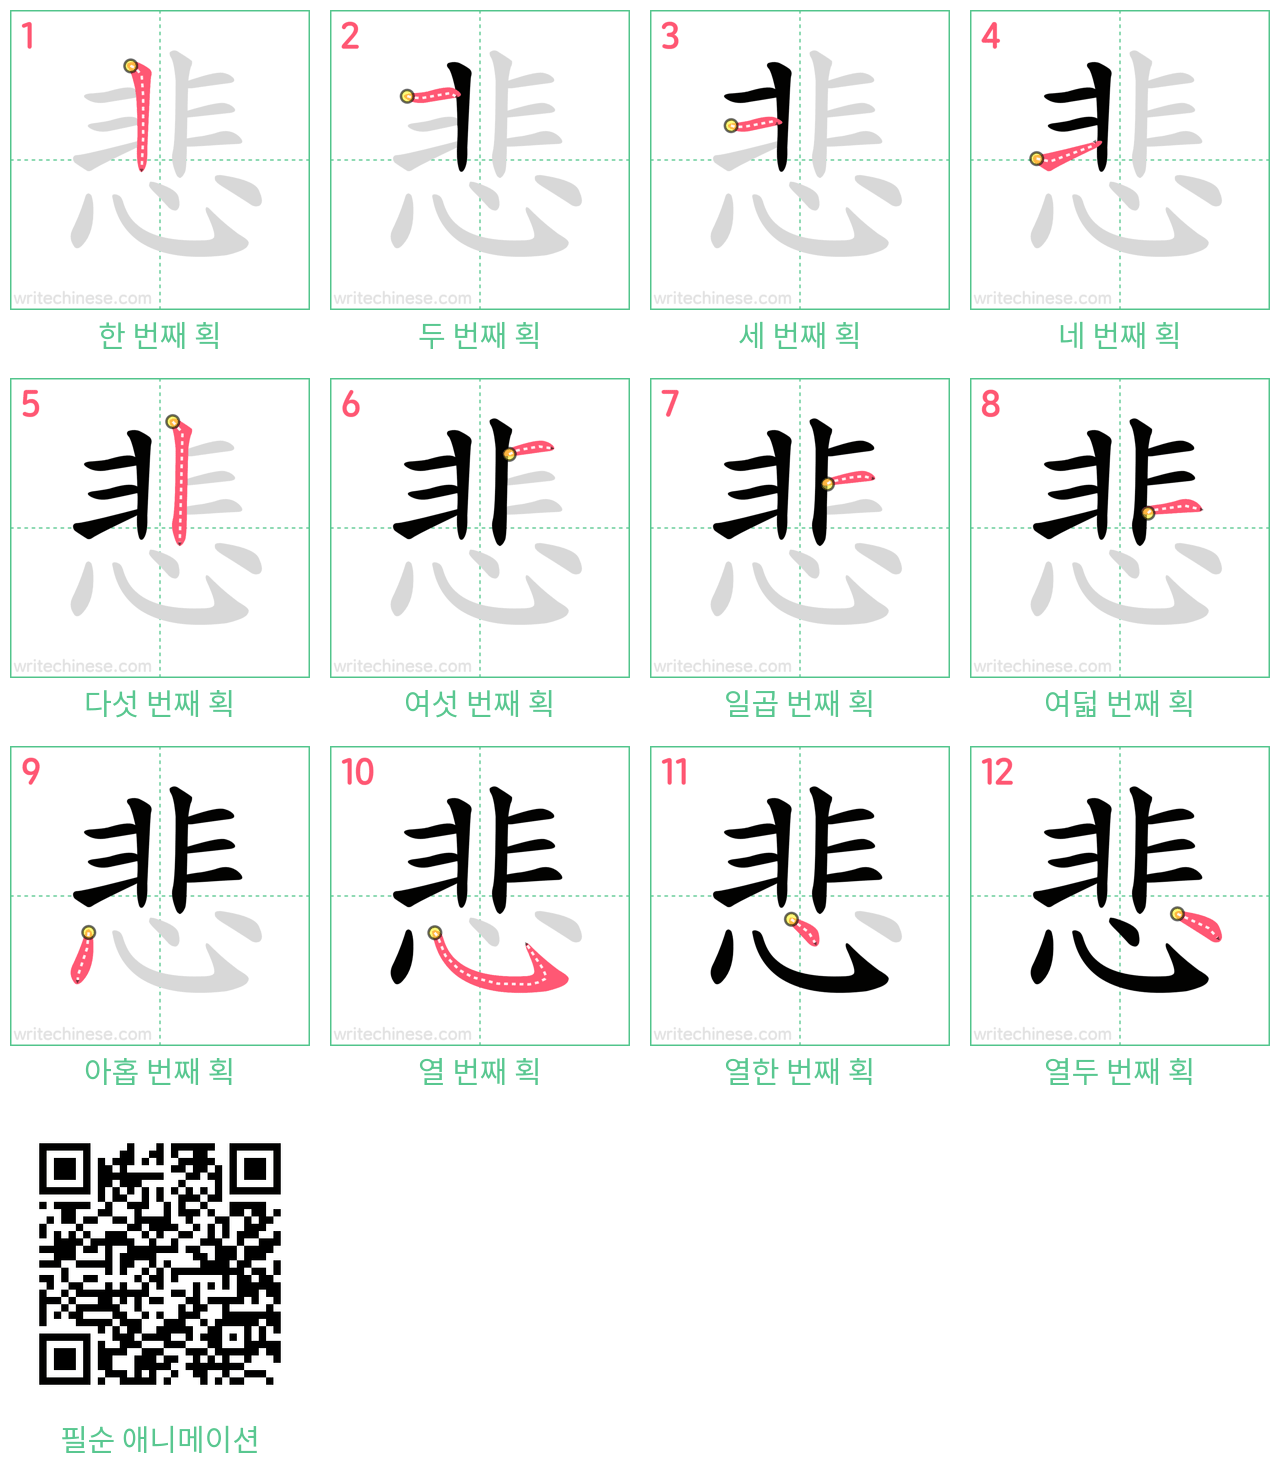 悲 step-by-step stroke order diagrams